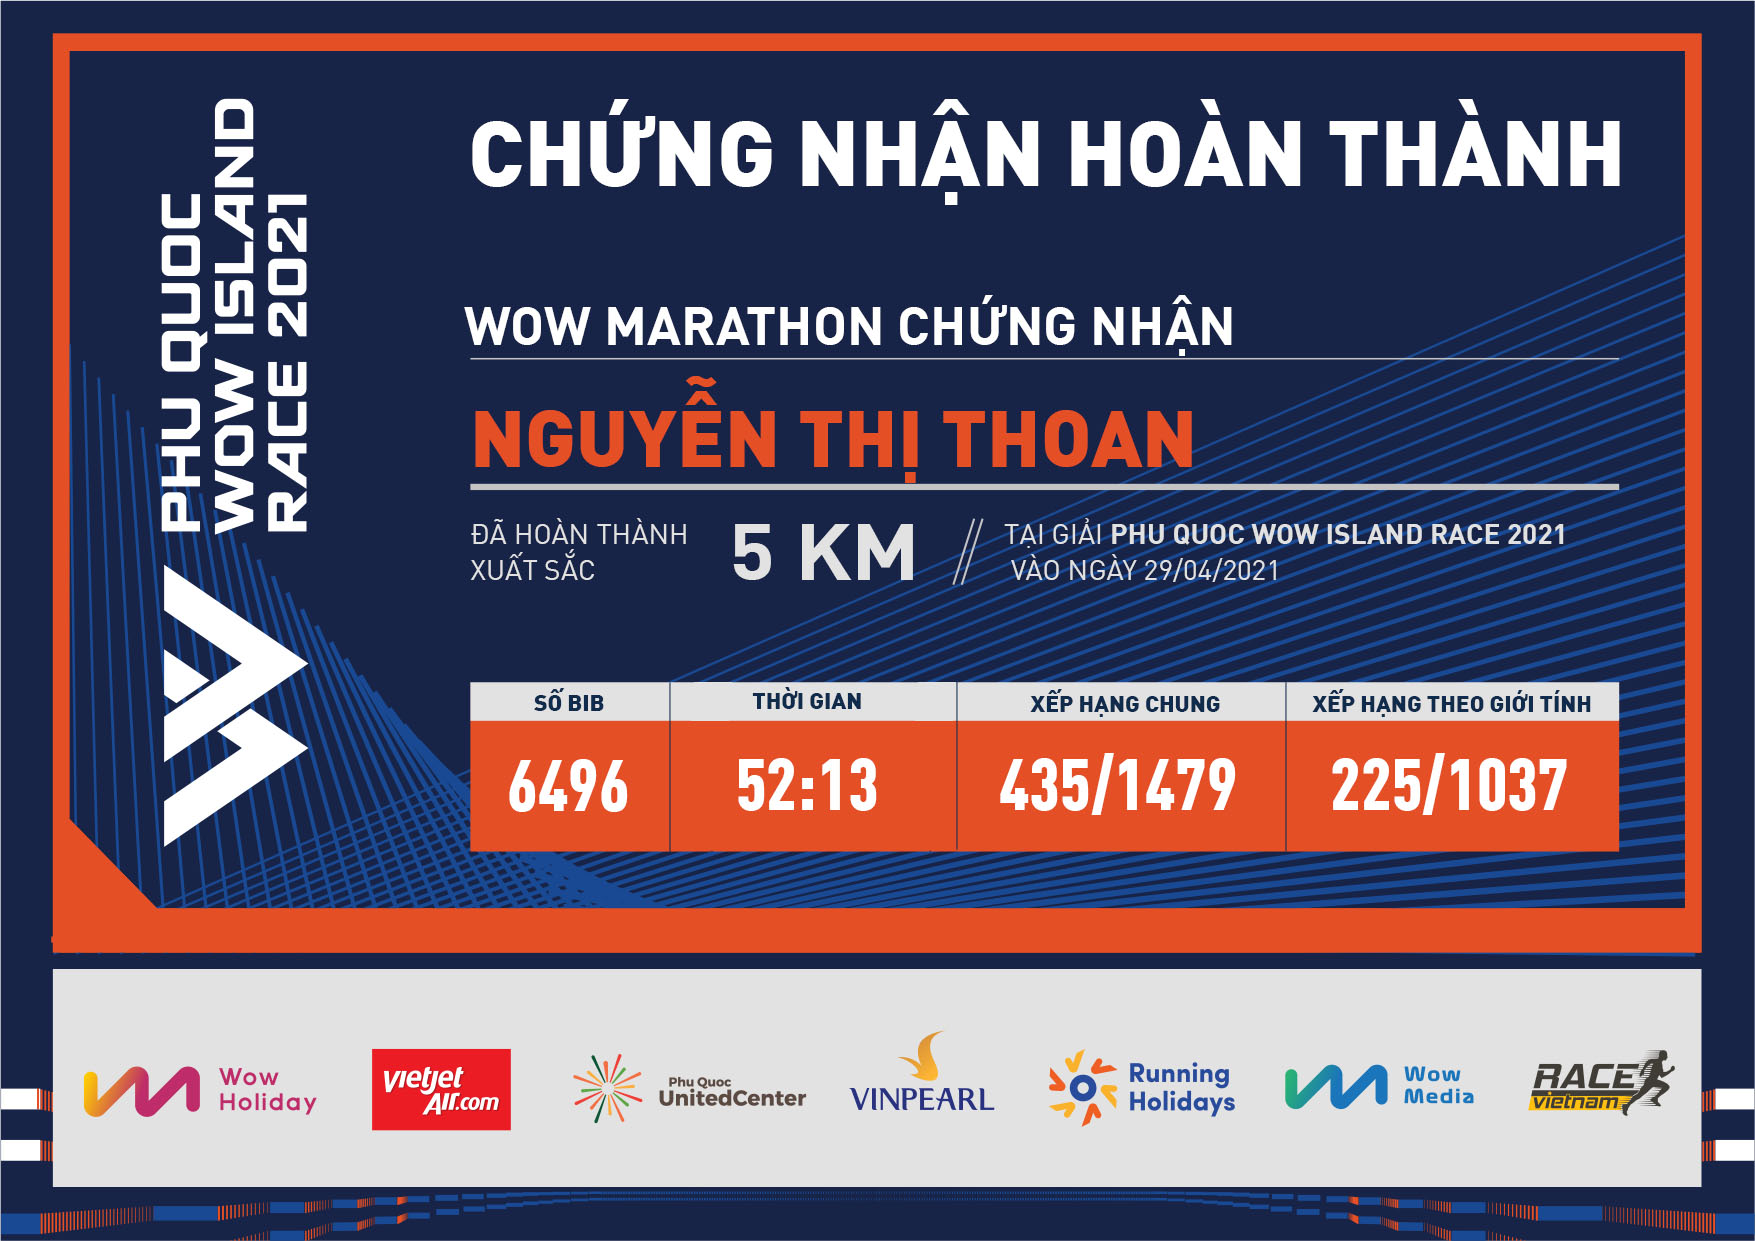 6496 - Nguyễn Thị Thoan